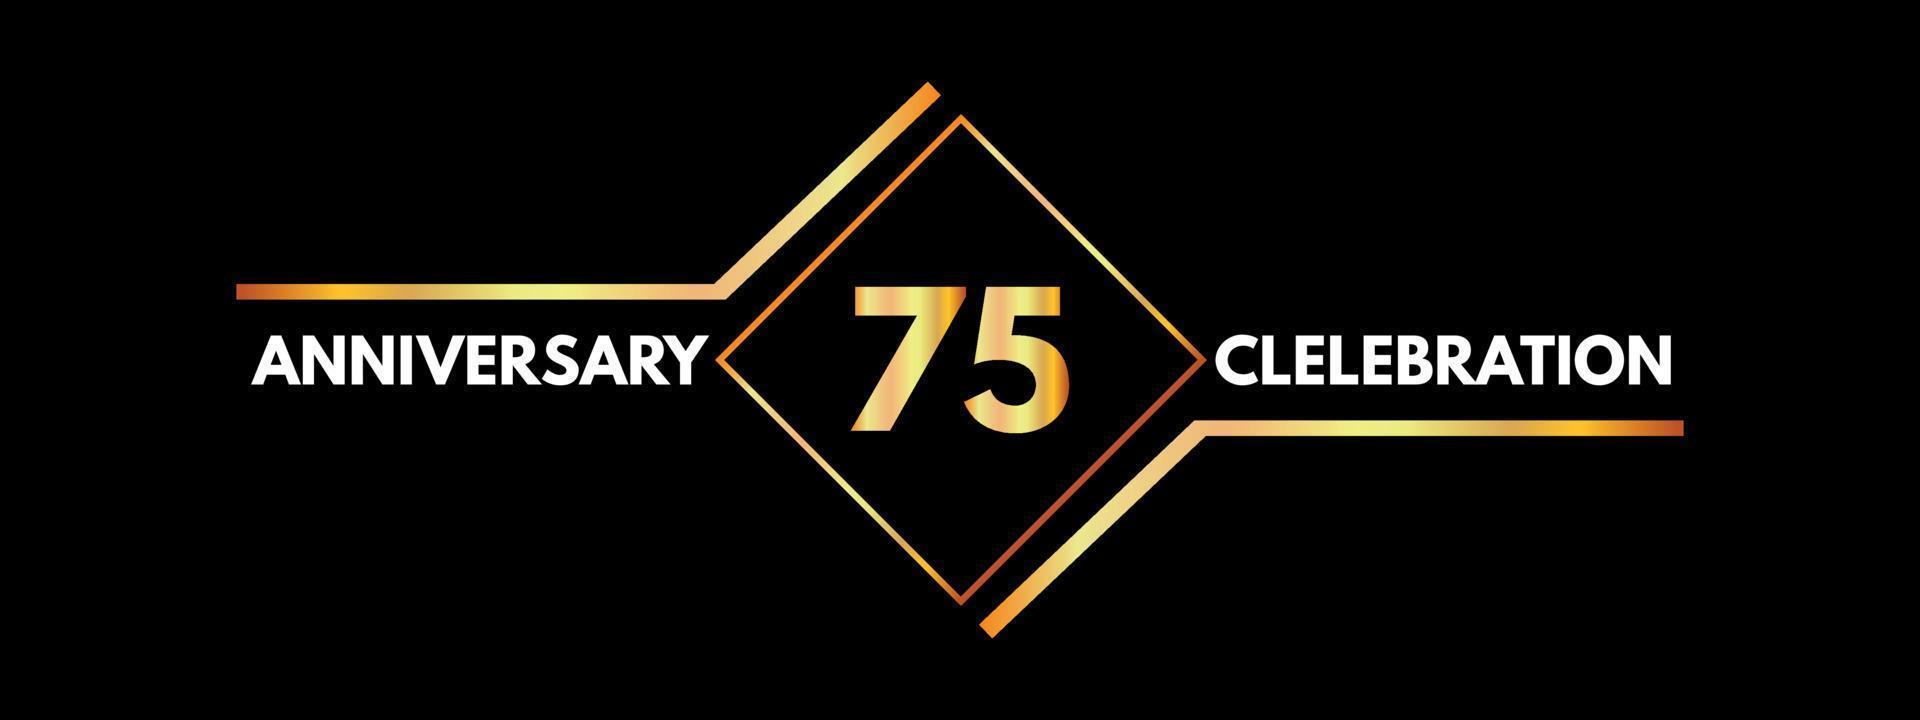 Celebrazione dell'anniversario di 75 anni con cornice dorata isolata su sfondo nero. disegno vettoriale per biglietto di auguri, festa di compleanno, matrimonio, festa evento, invito, cerimonia. Logo dell'anniversario di 75 anni.